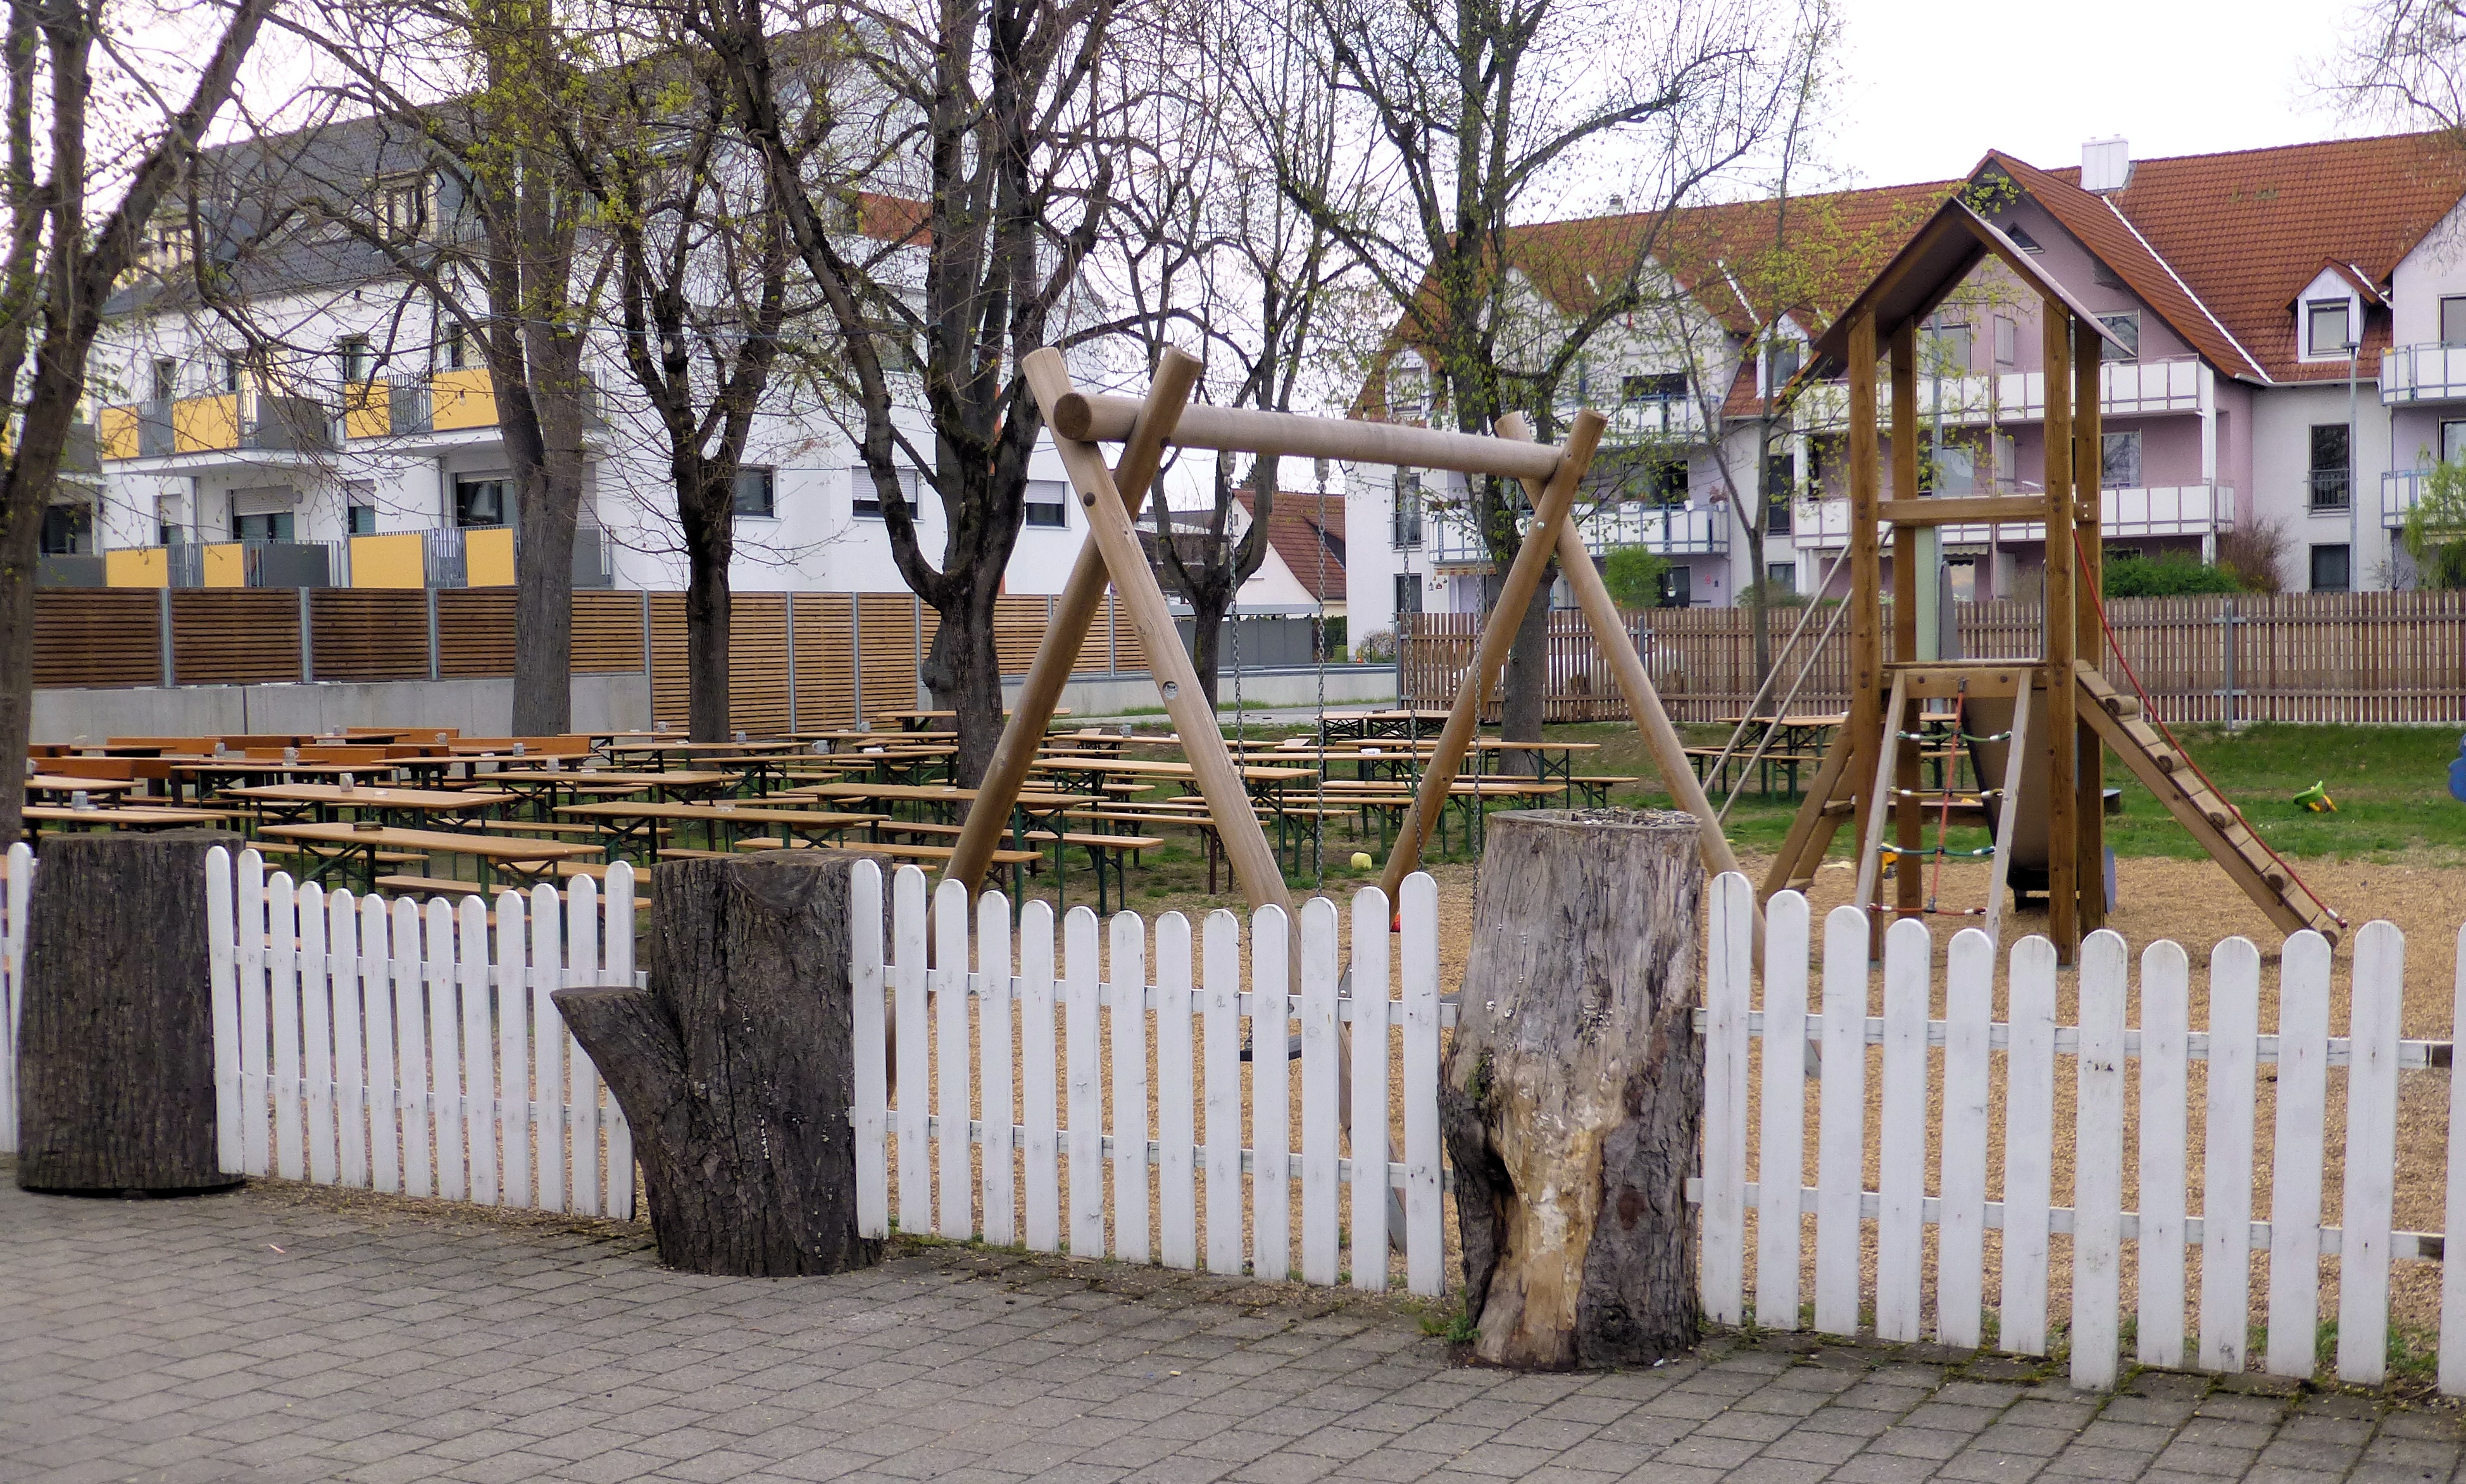 Biergarten mit angeschlossenem Spielplatz